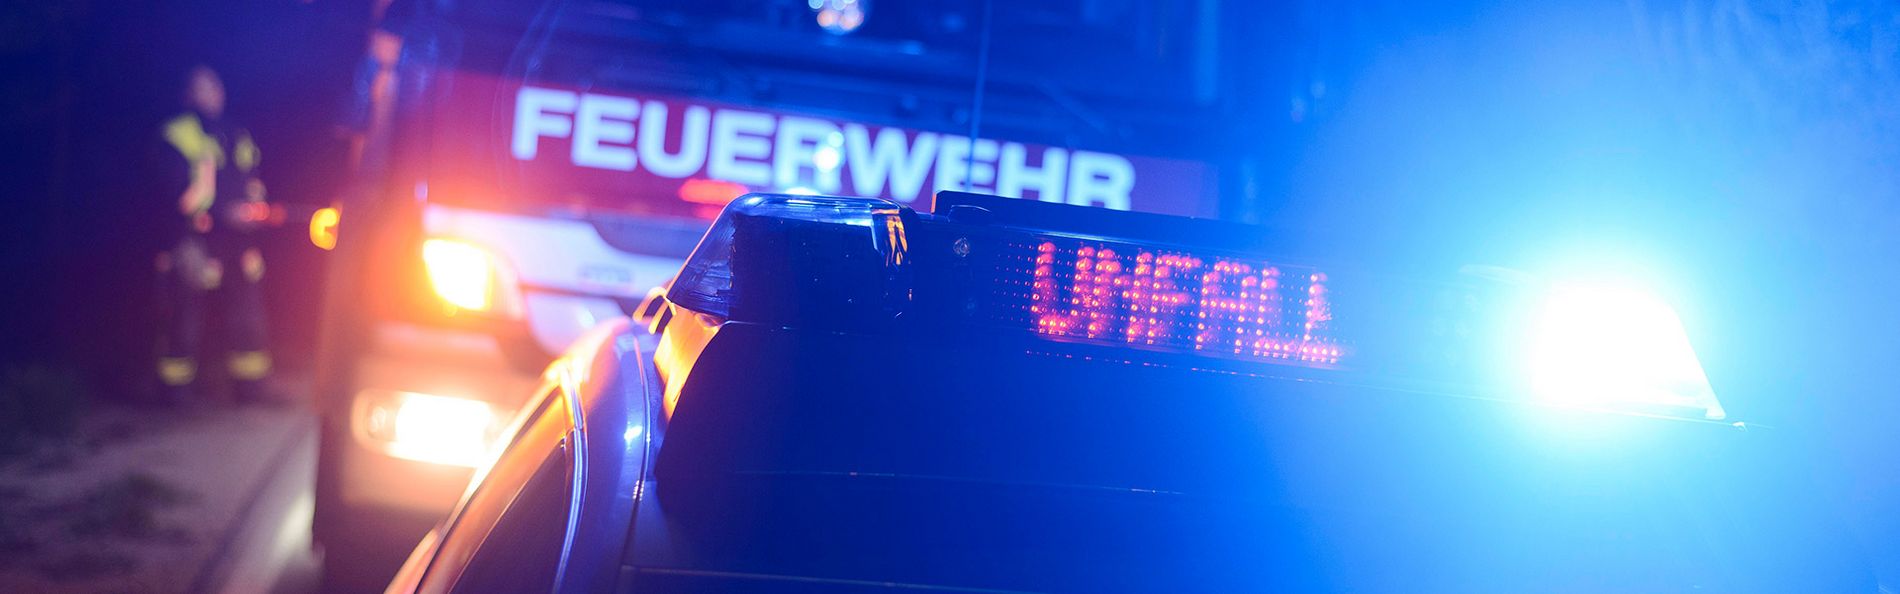 Blaulicht mit Feuerwehr- und Polizeiauto